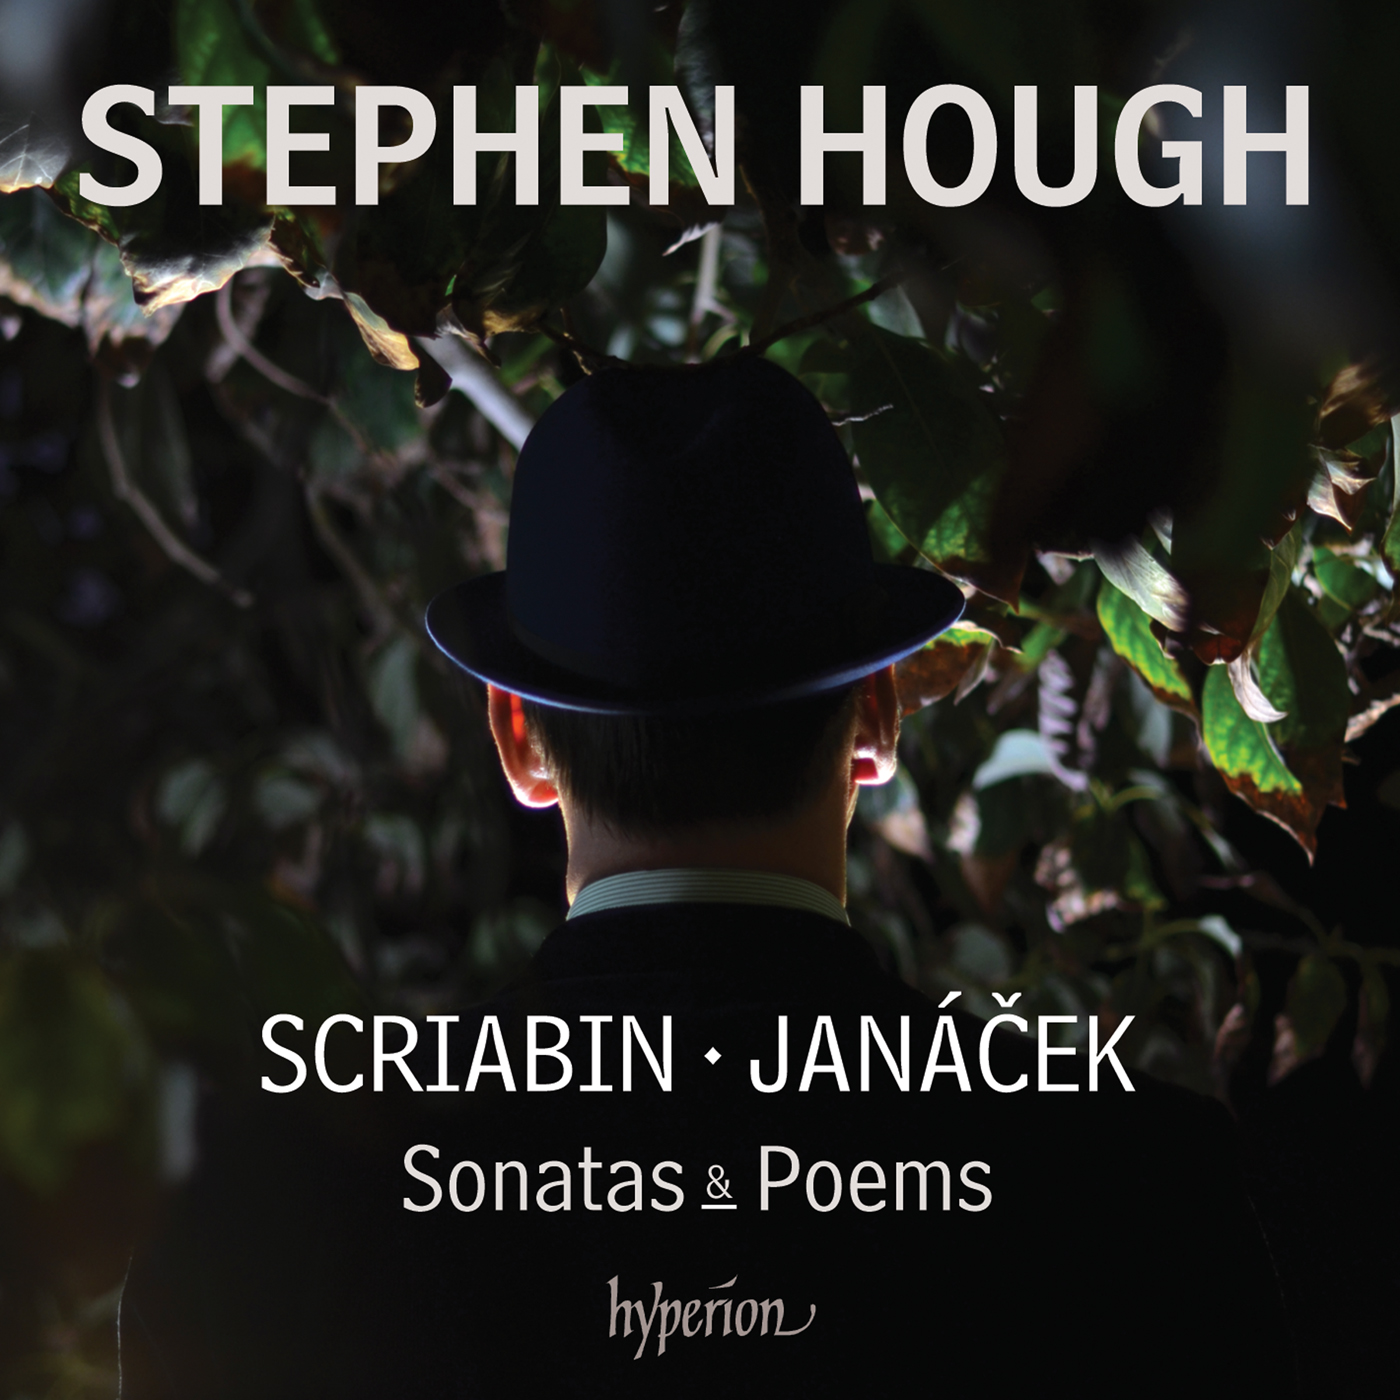 Scriabin & Janáček: Sonatas & Poems